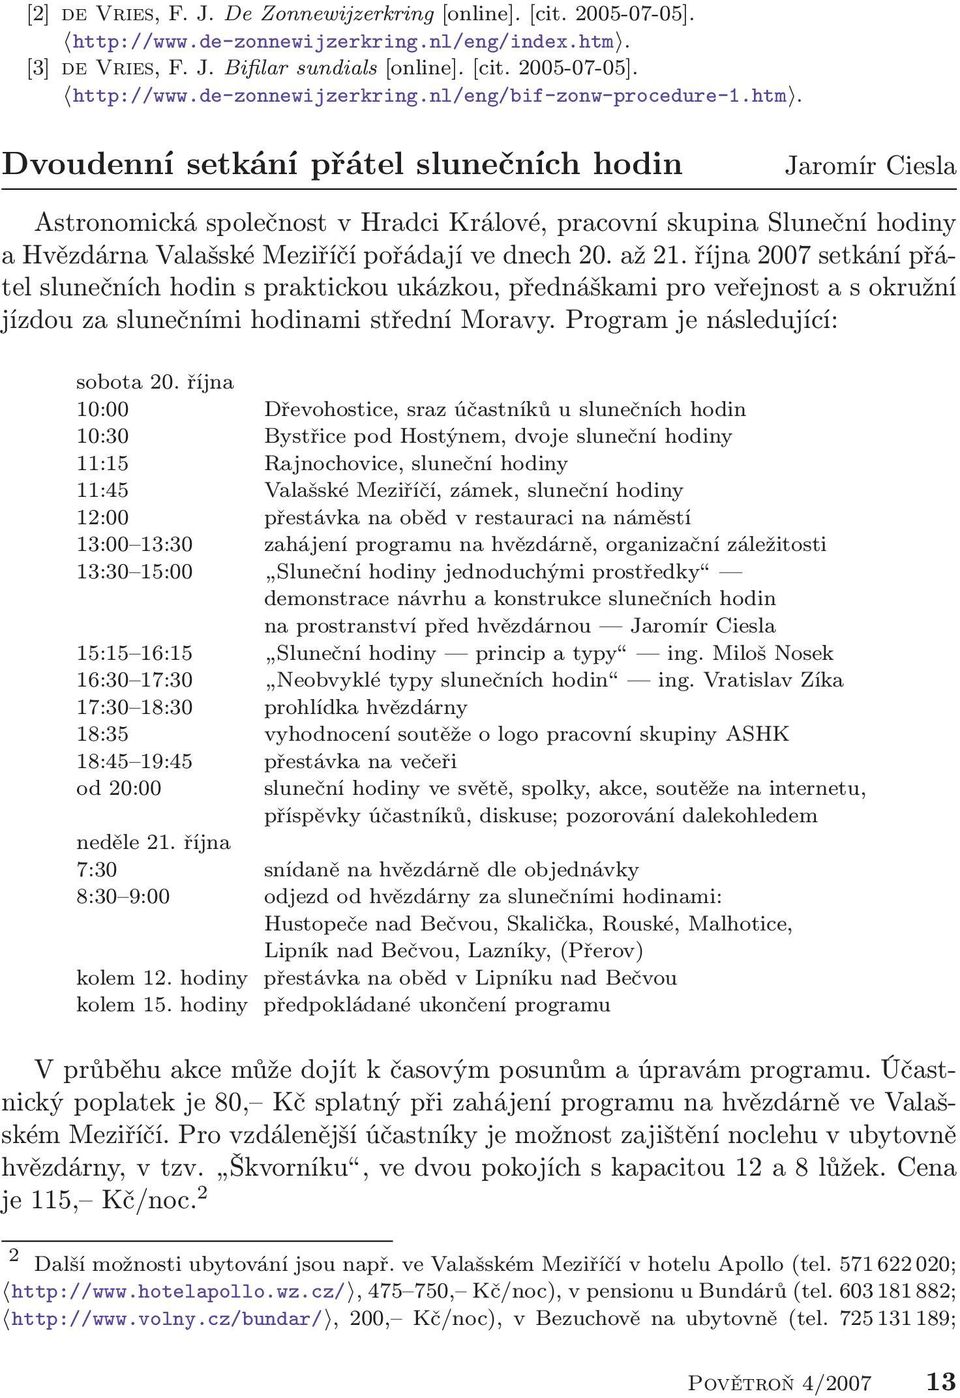 října 2007 setkání přátel slunečních hodin s praktickou ukázkou, přednáškami pro veřejnost a s okružní jízdou za slunečními hodinami střední Moravy. Program je následující: sobota 20.